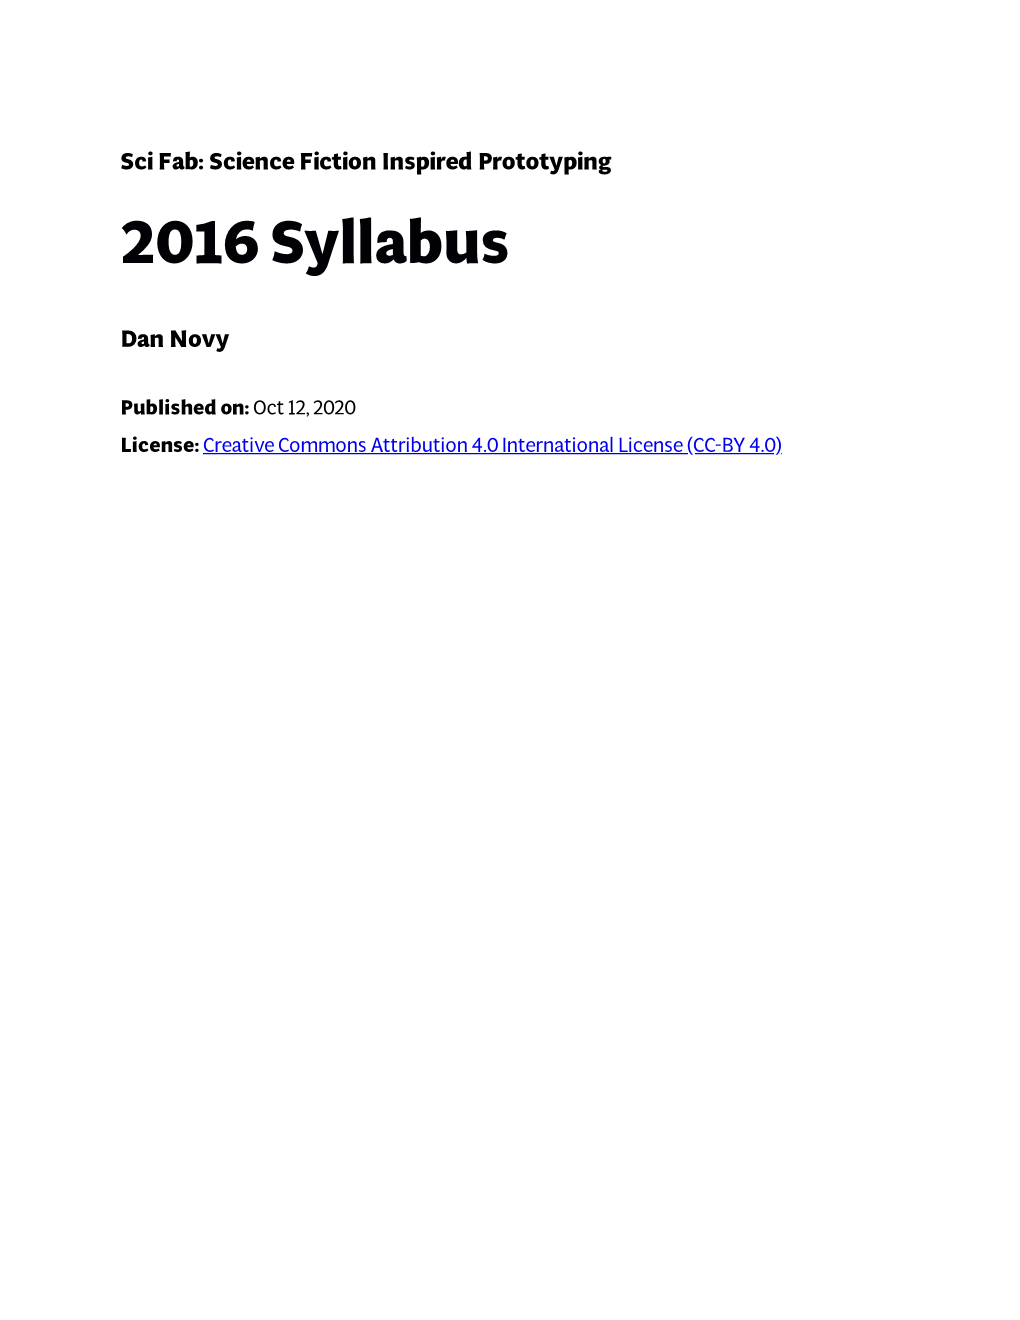 2016 Syllabus